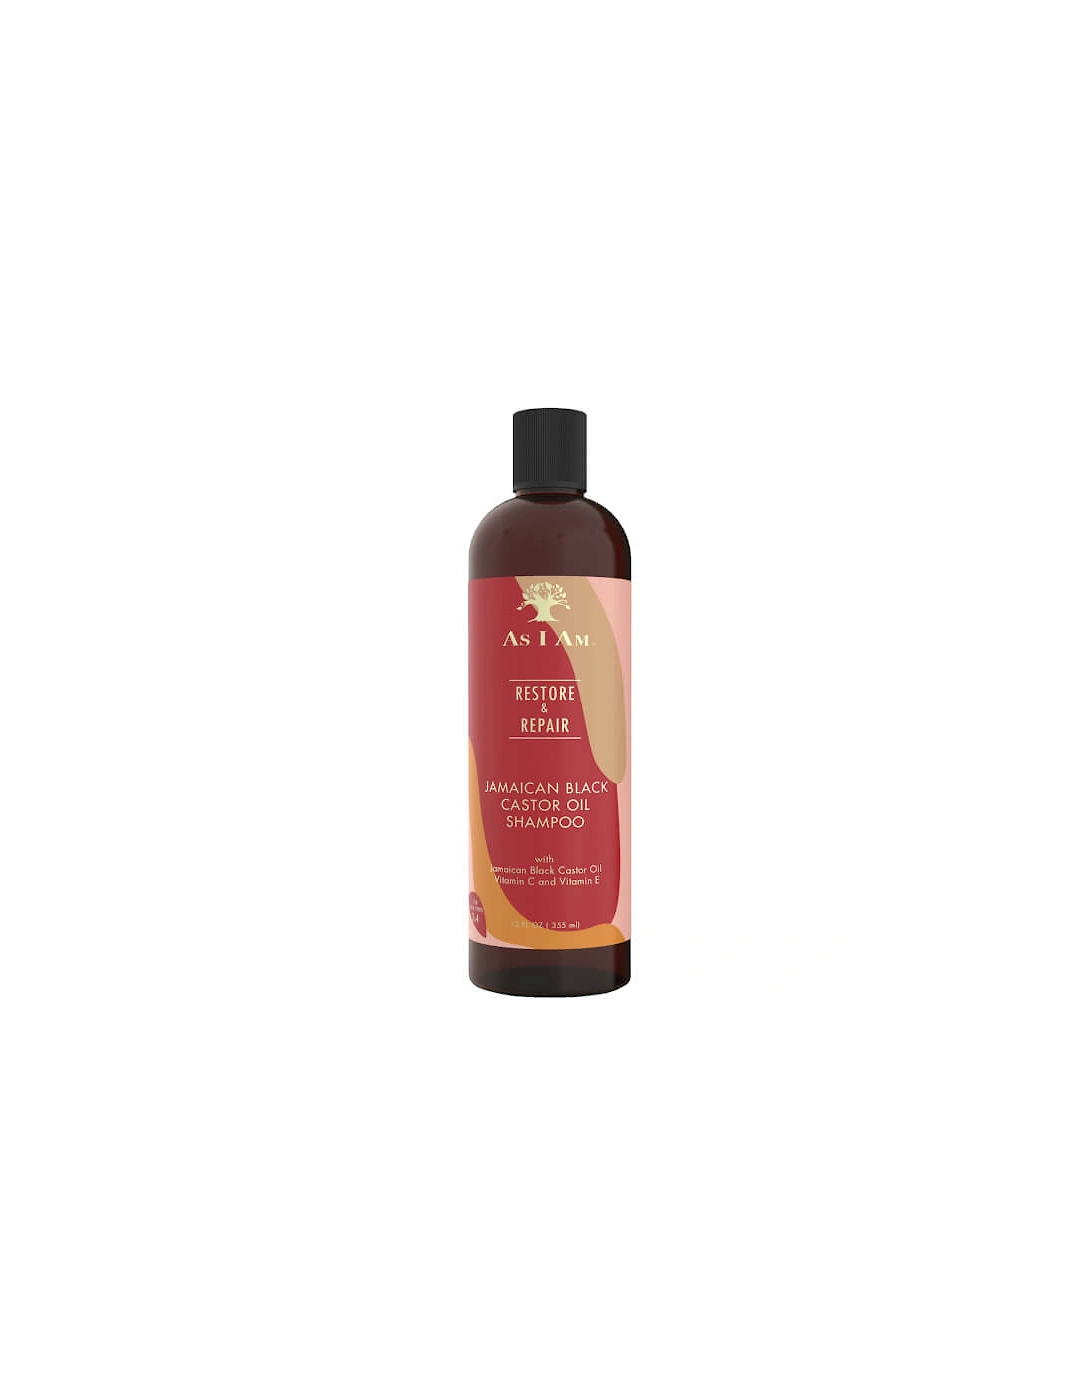 Jamaican Black Castor Oil Shampoo, 2 of 1